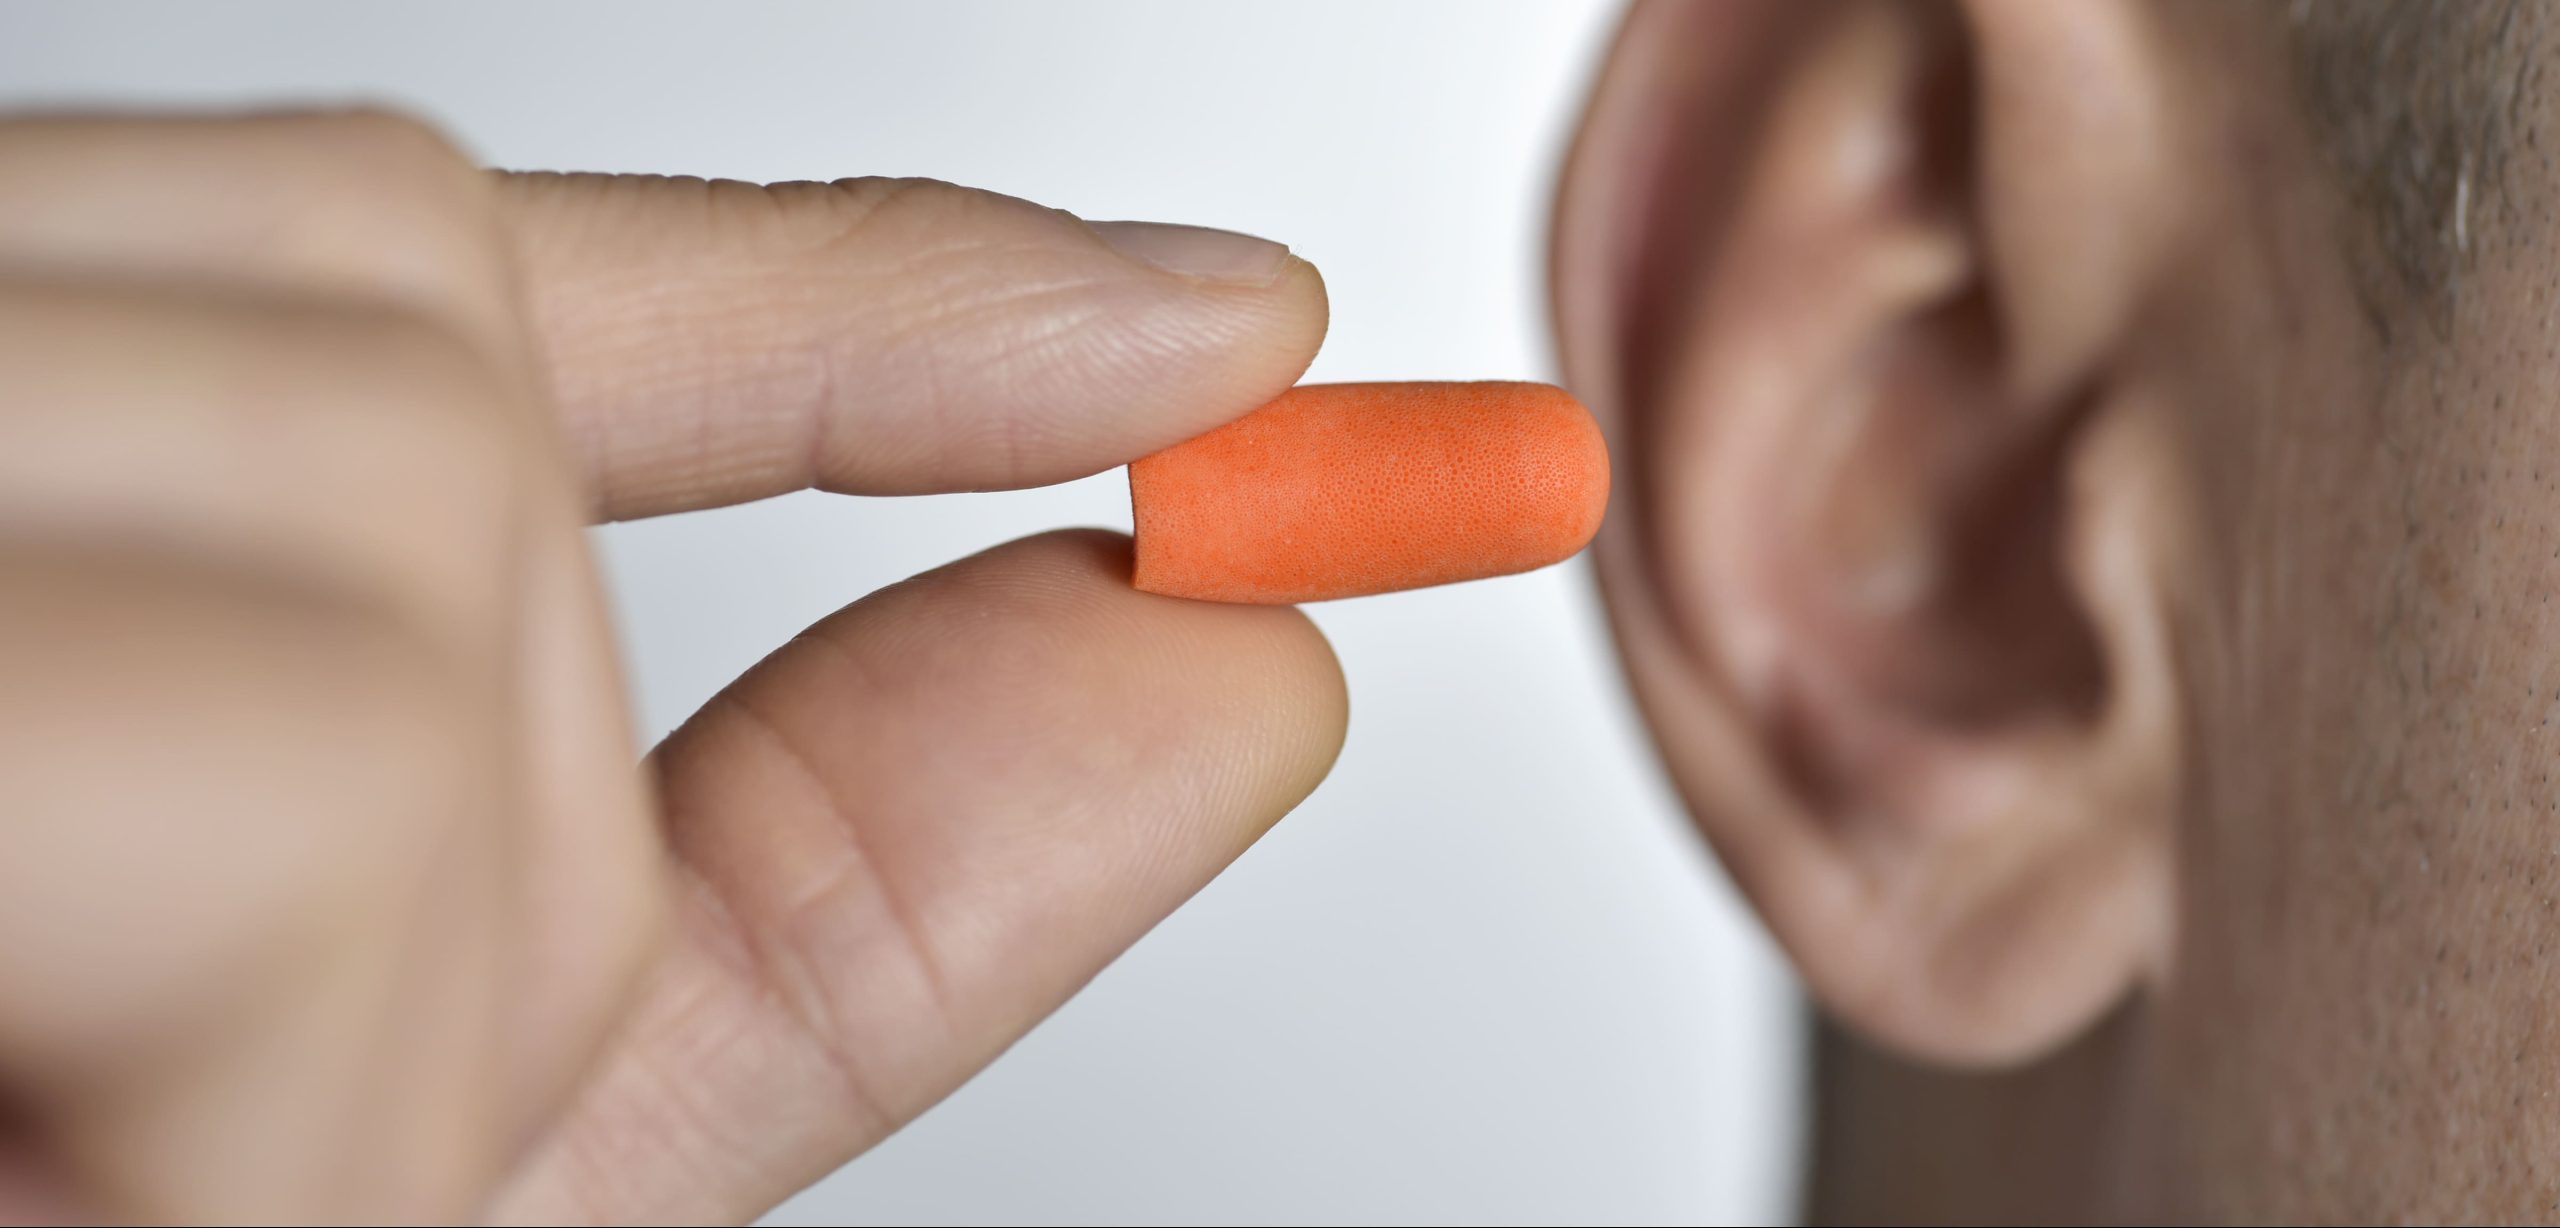 Tapones para los oídos: El accesorio indispensable prevenir la otitis en verano.